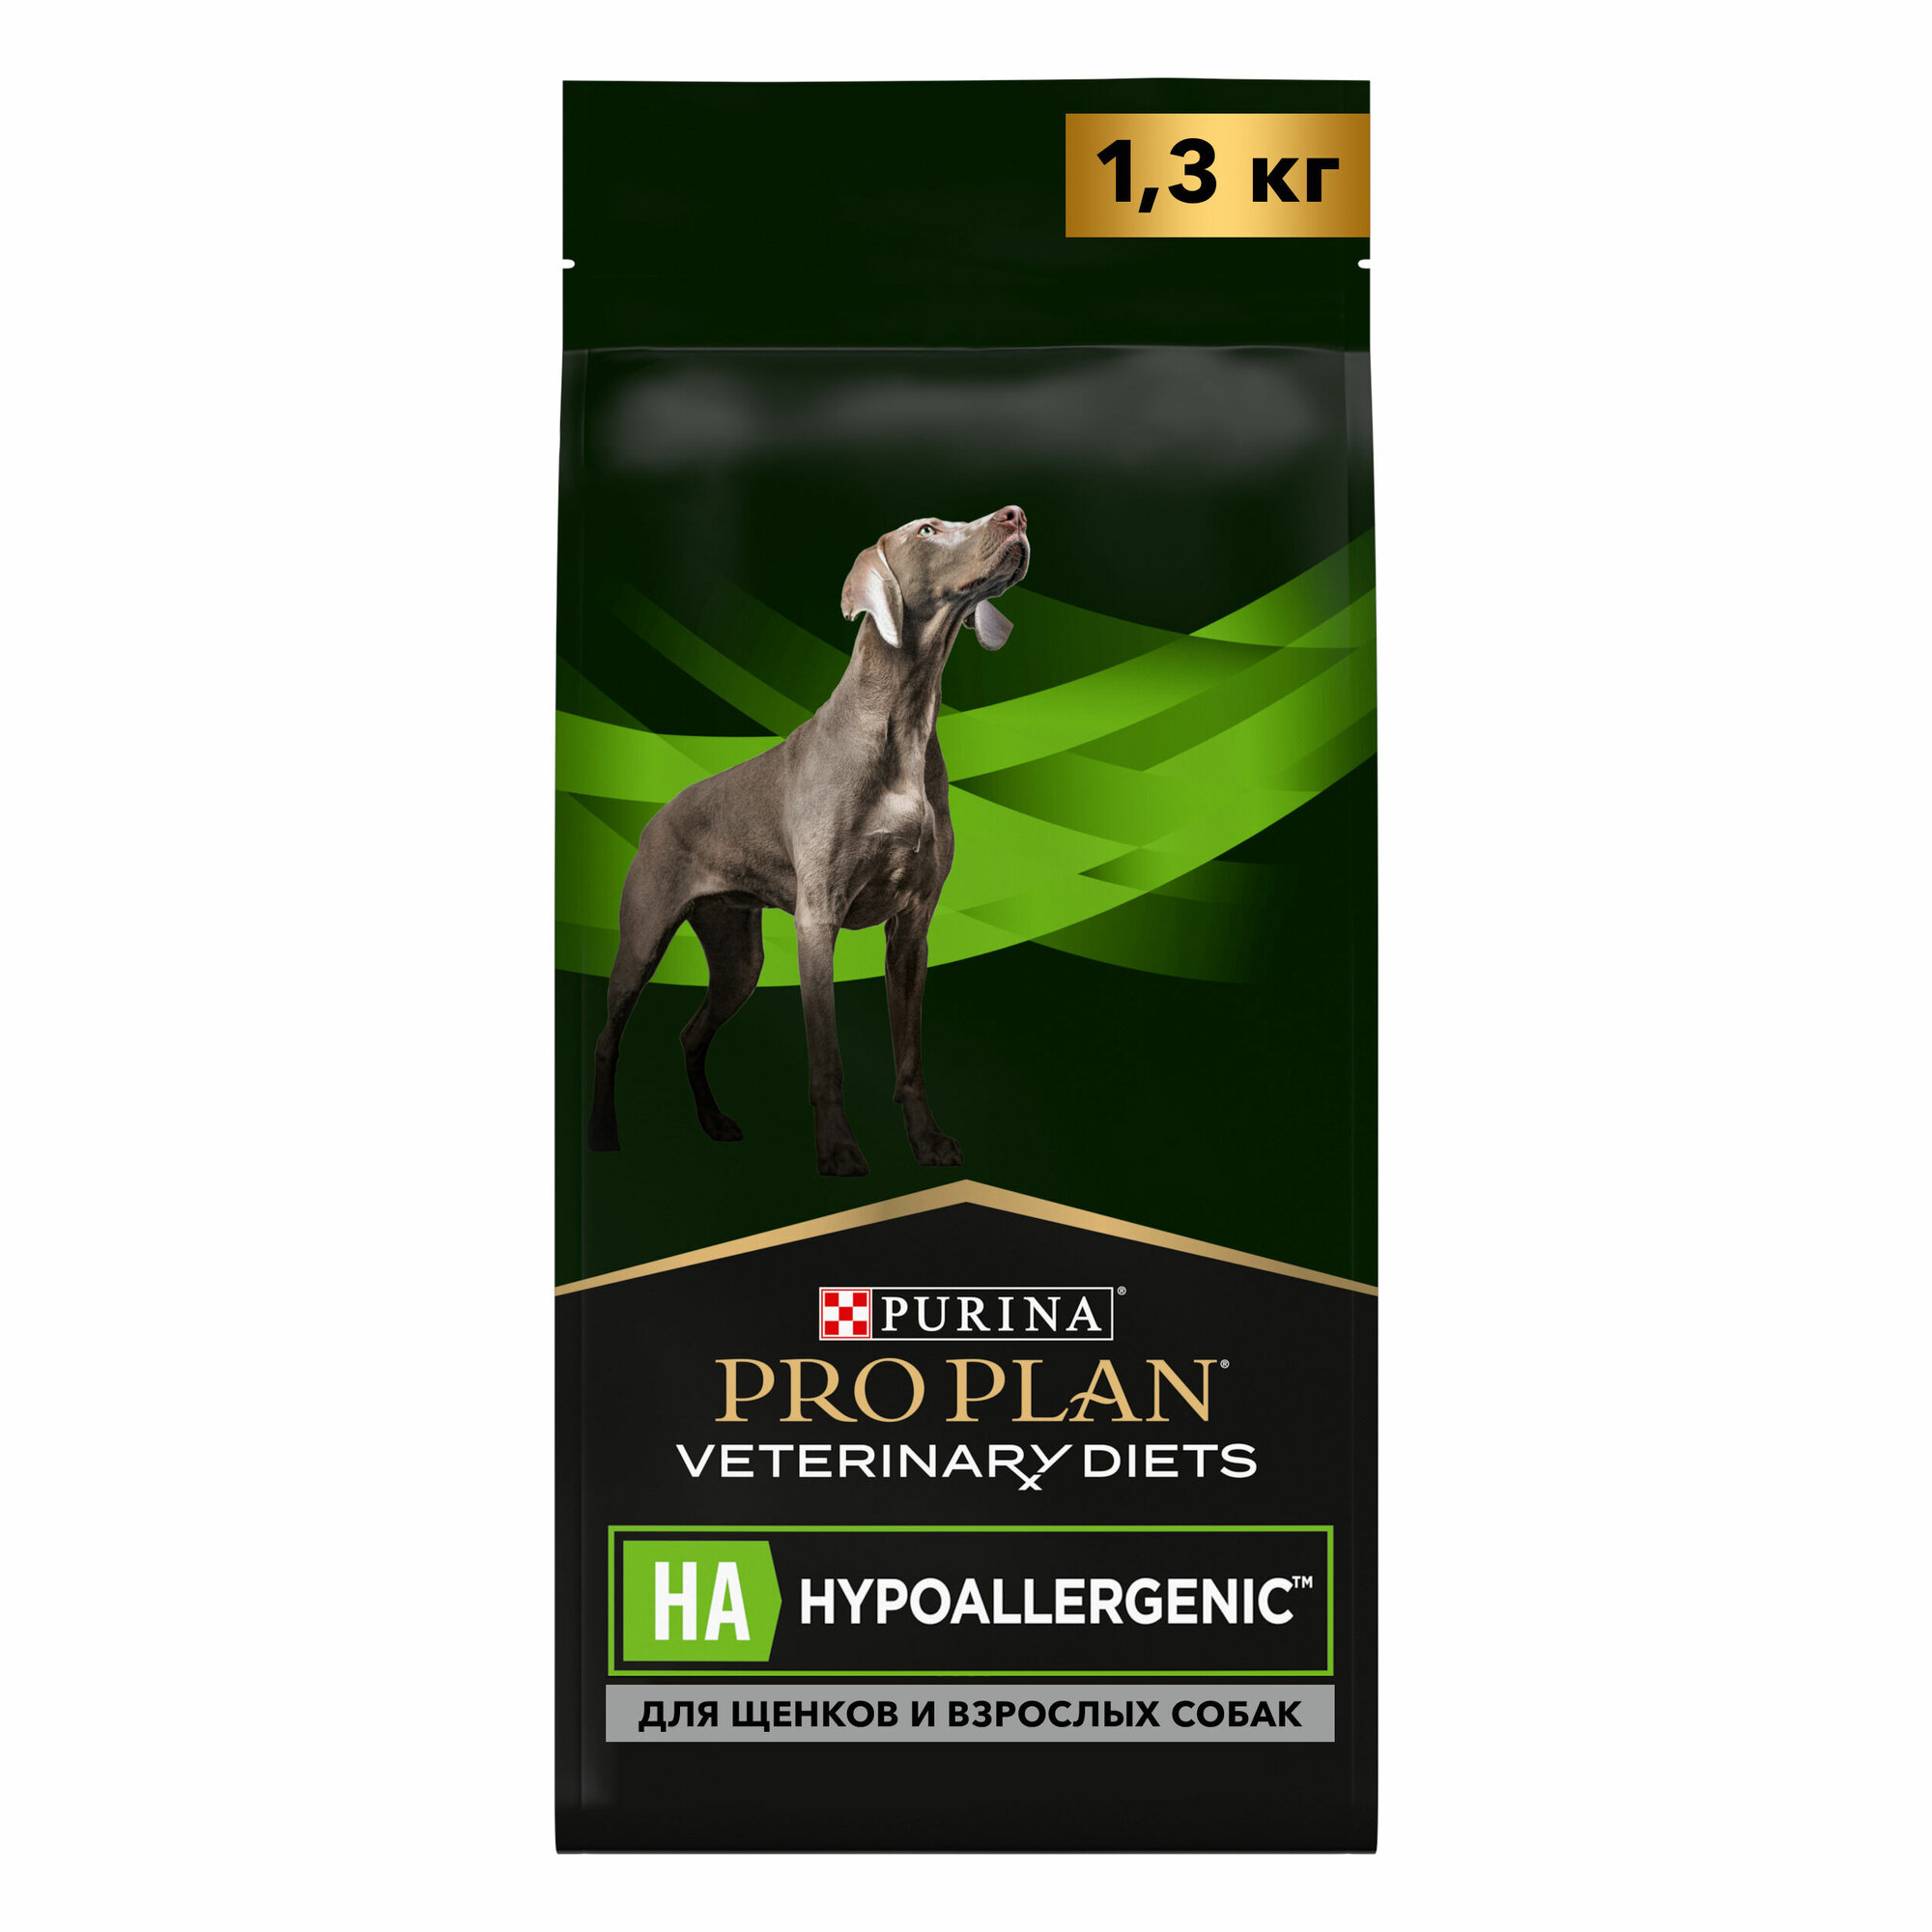 Сухой корм Pro Plan Veterinary Diets HA Hypoallergenic для щенков и взрослых собак при пищевой непереносимости, 1.3 кг